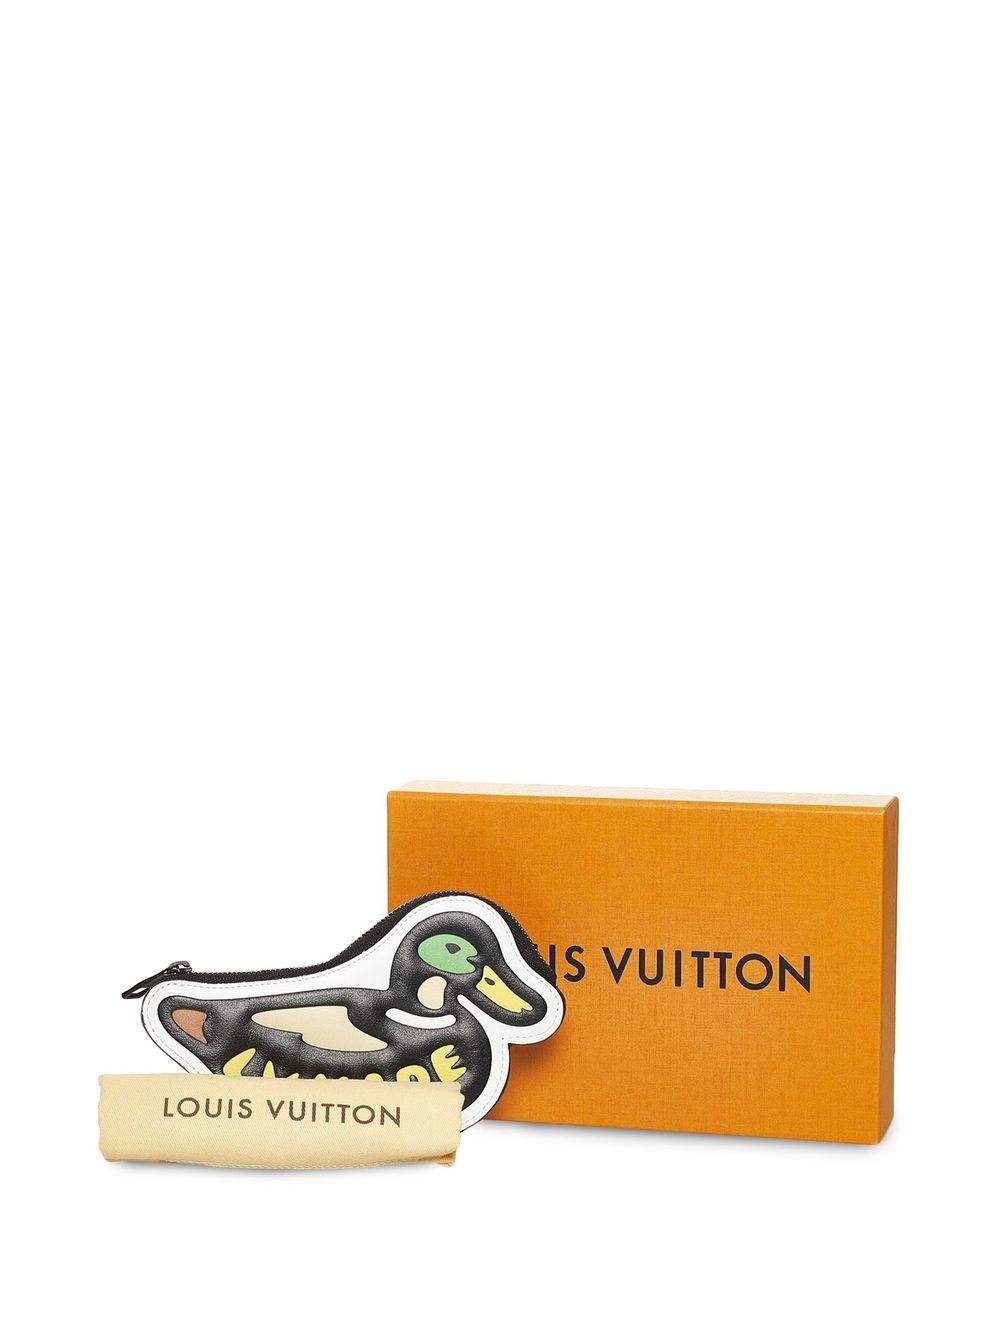 Louis Vuitton x NIGO Duck Coin Holder